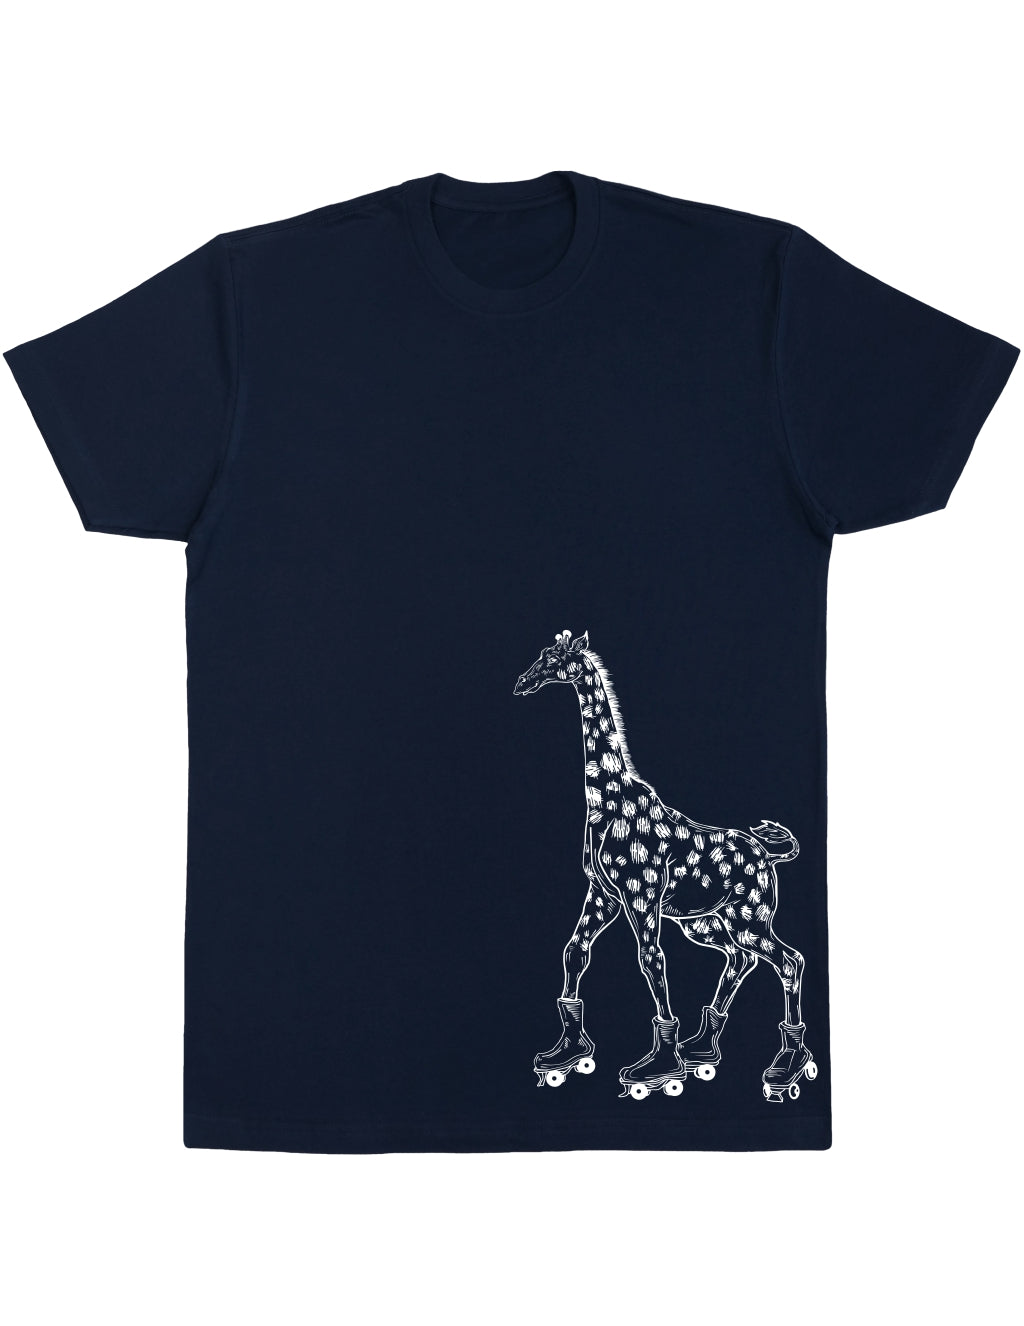 seembo-giraffe-on-a-roller-skates-men-cotton-navy-t-shirt-side-print